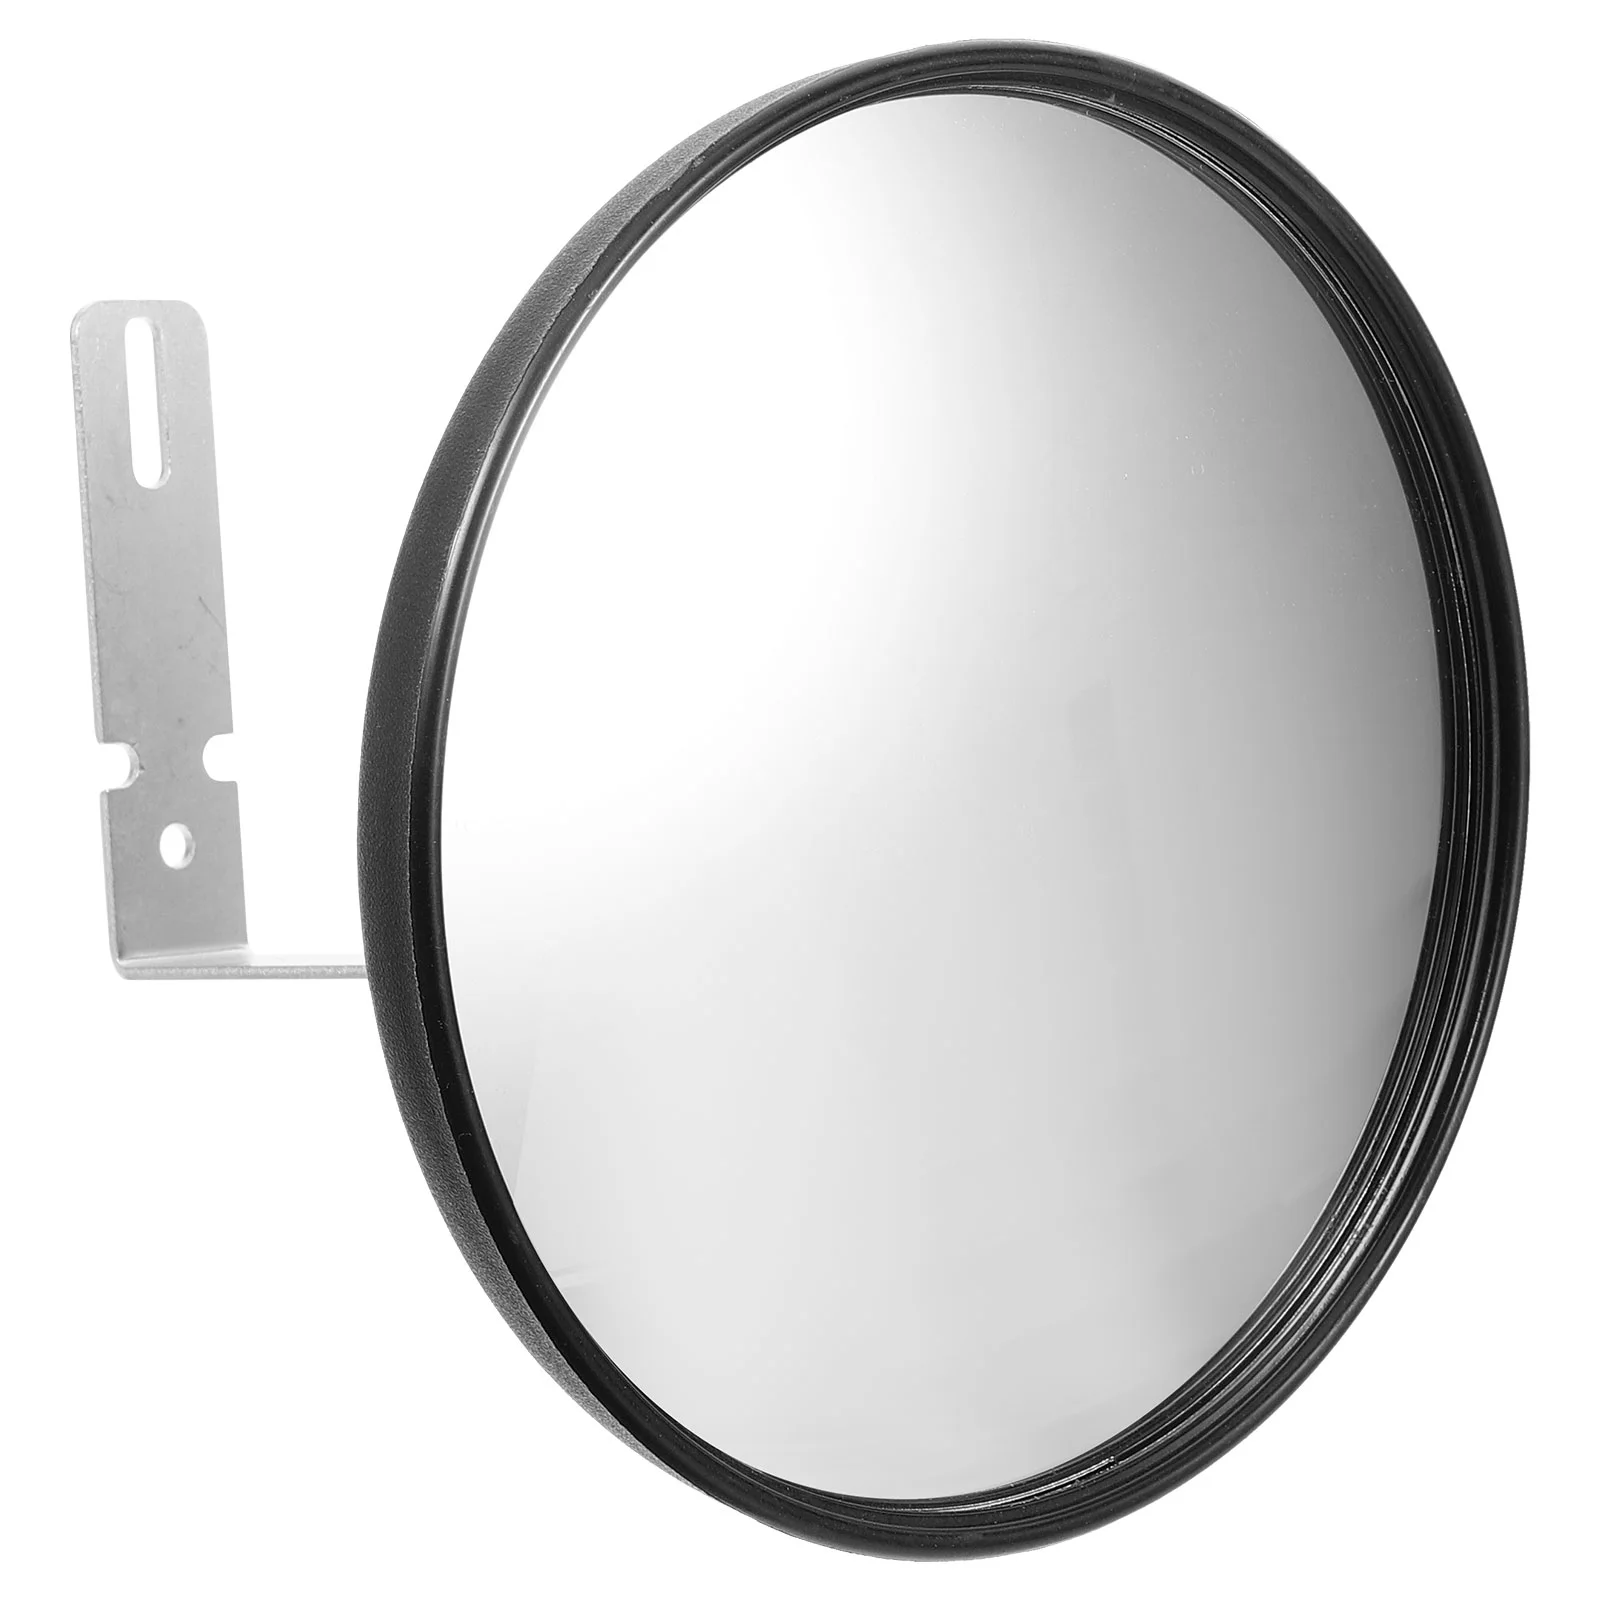 

Широкоугольное зеркало для обзора слепых зон гаража, зеркало для безопасности дорожного движения, выпуклое зеркало для слепых зон, зеркало для офиса, супермаркета, гаража